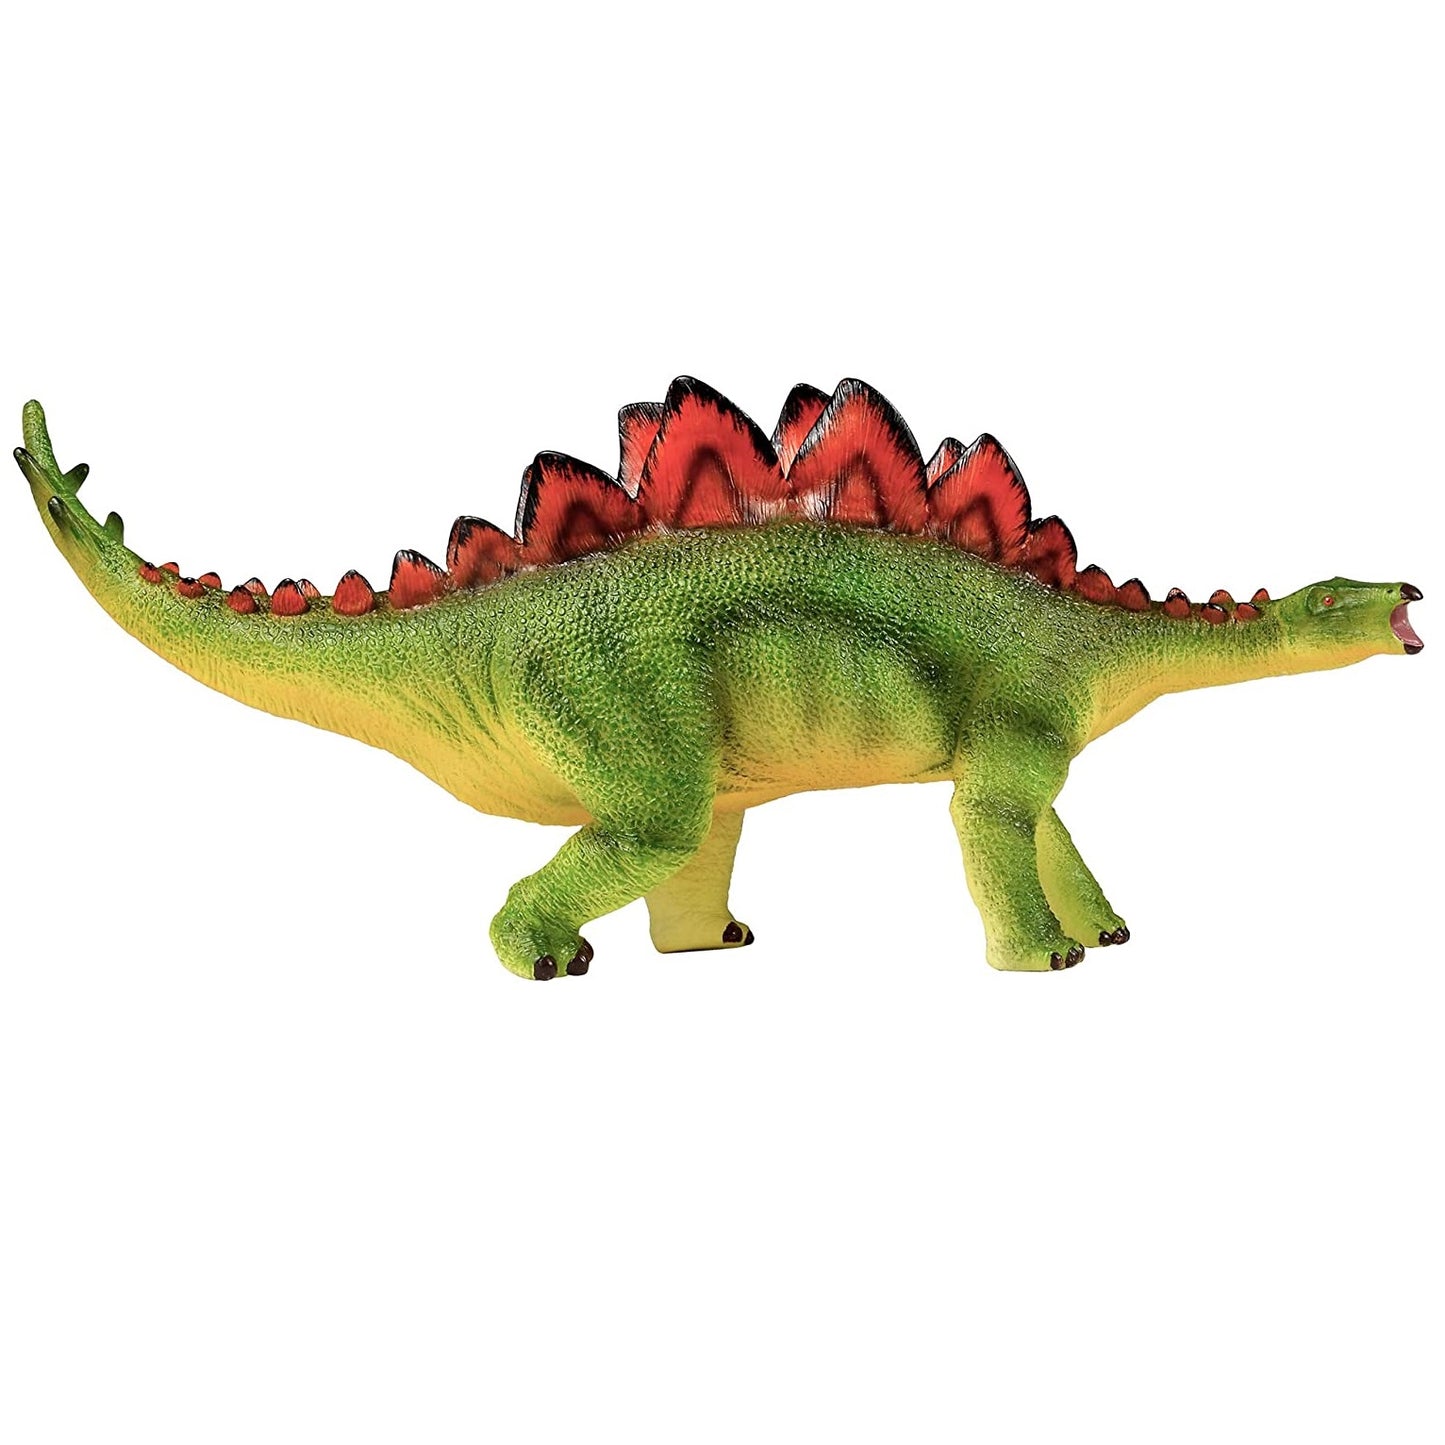 Stegosaurus 19" dinosaur figure